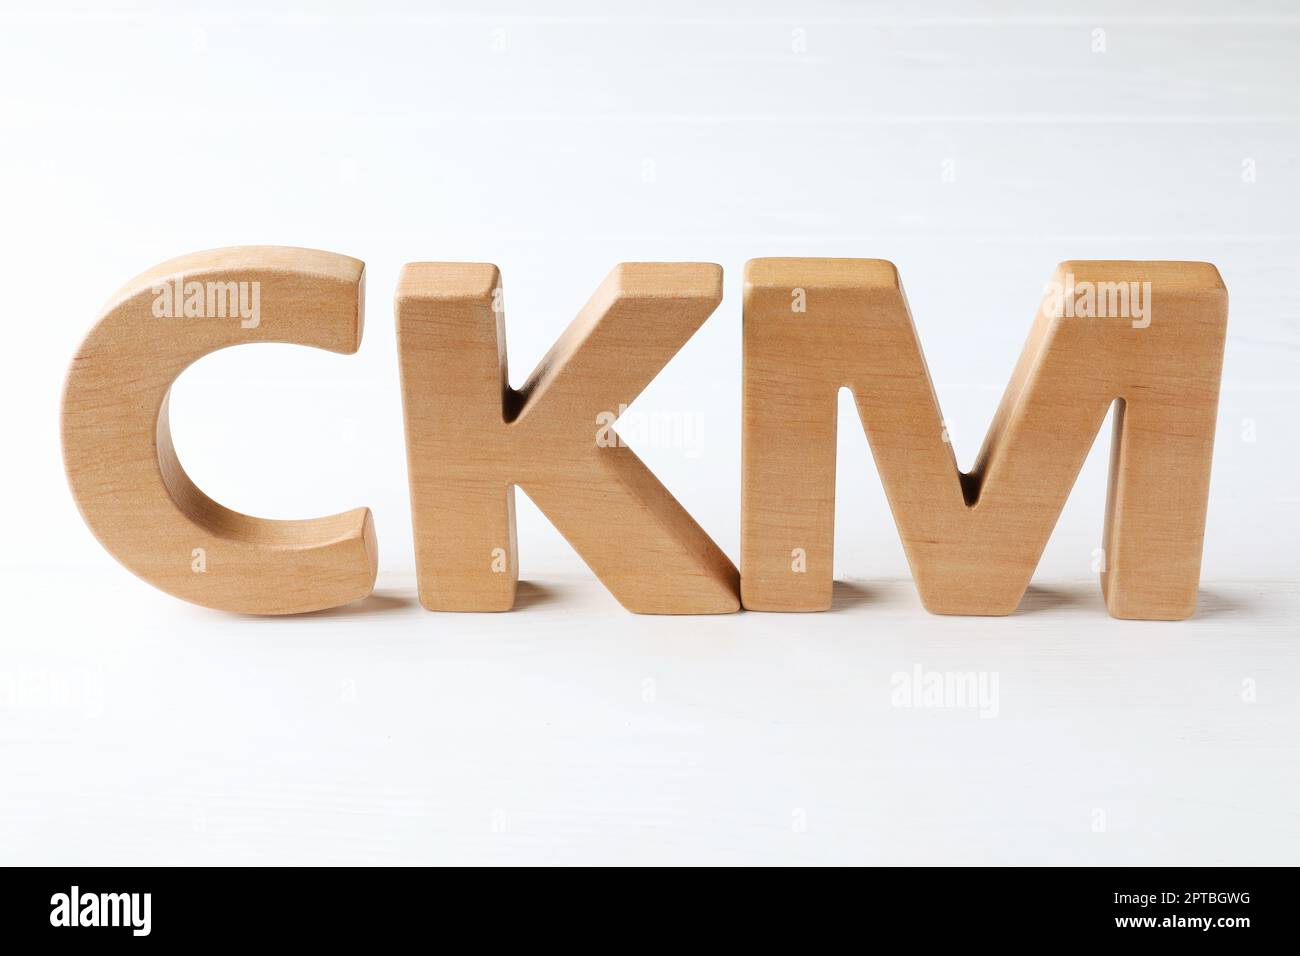 Abbreviazione CKM (Customer Knowledge Management) composta da lettere su tavolo di legno bianco Foto Stock